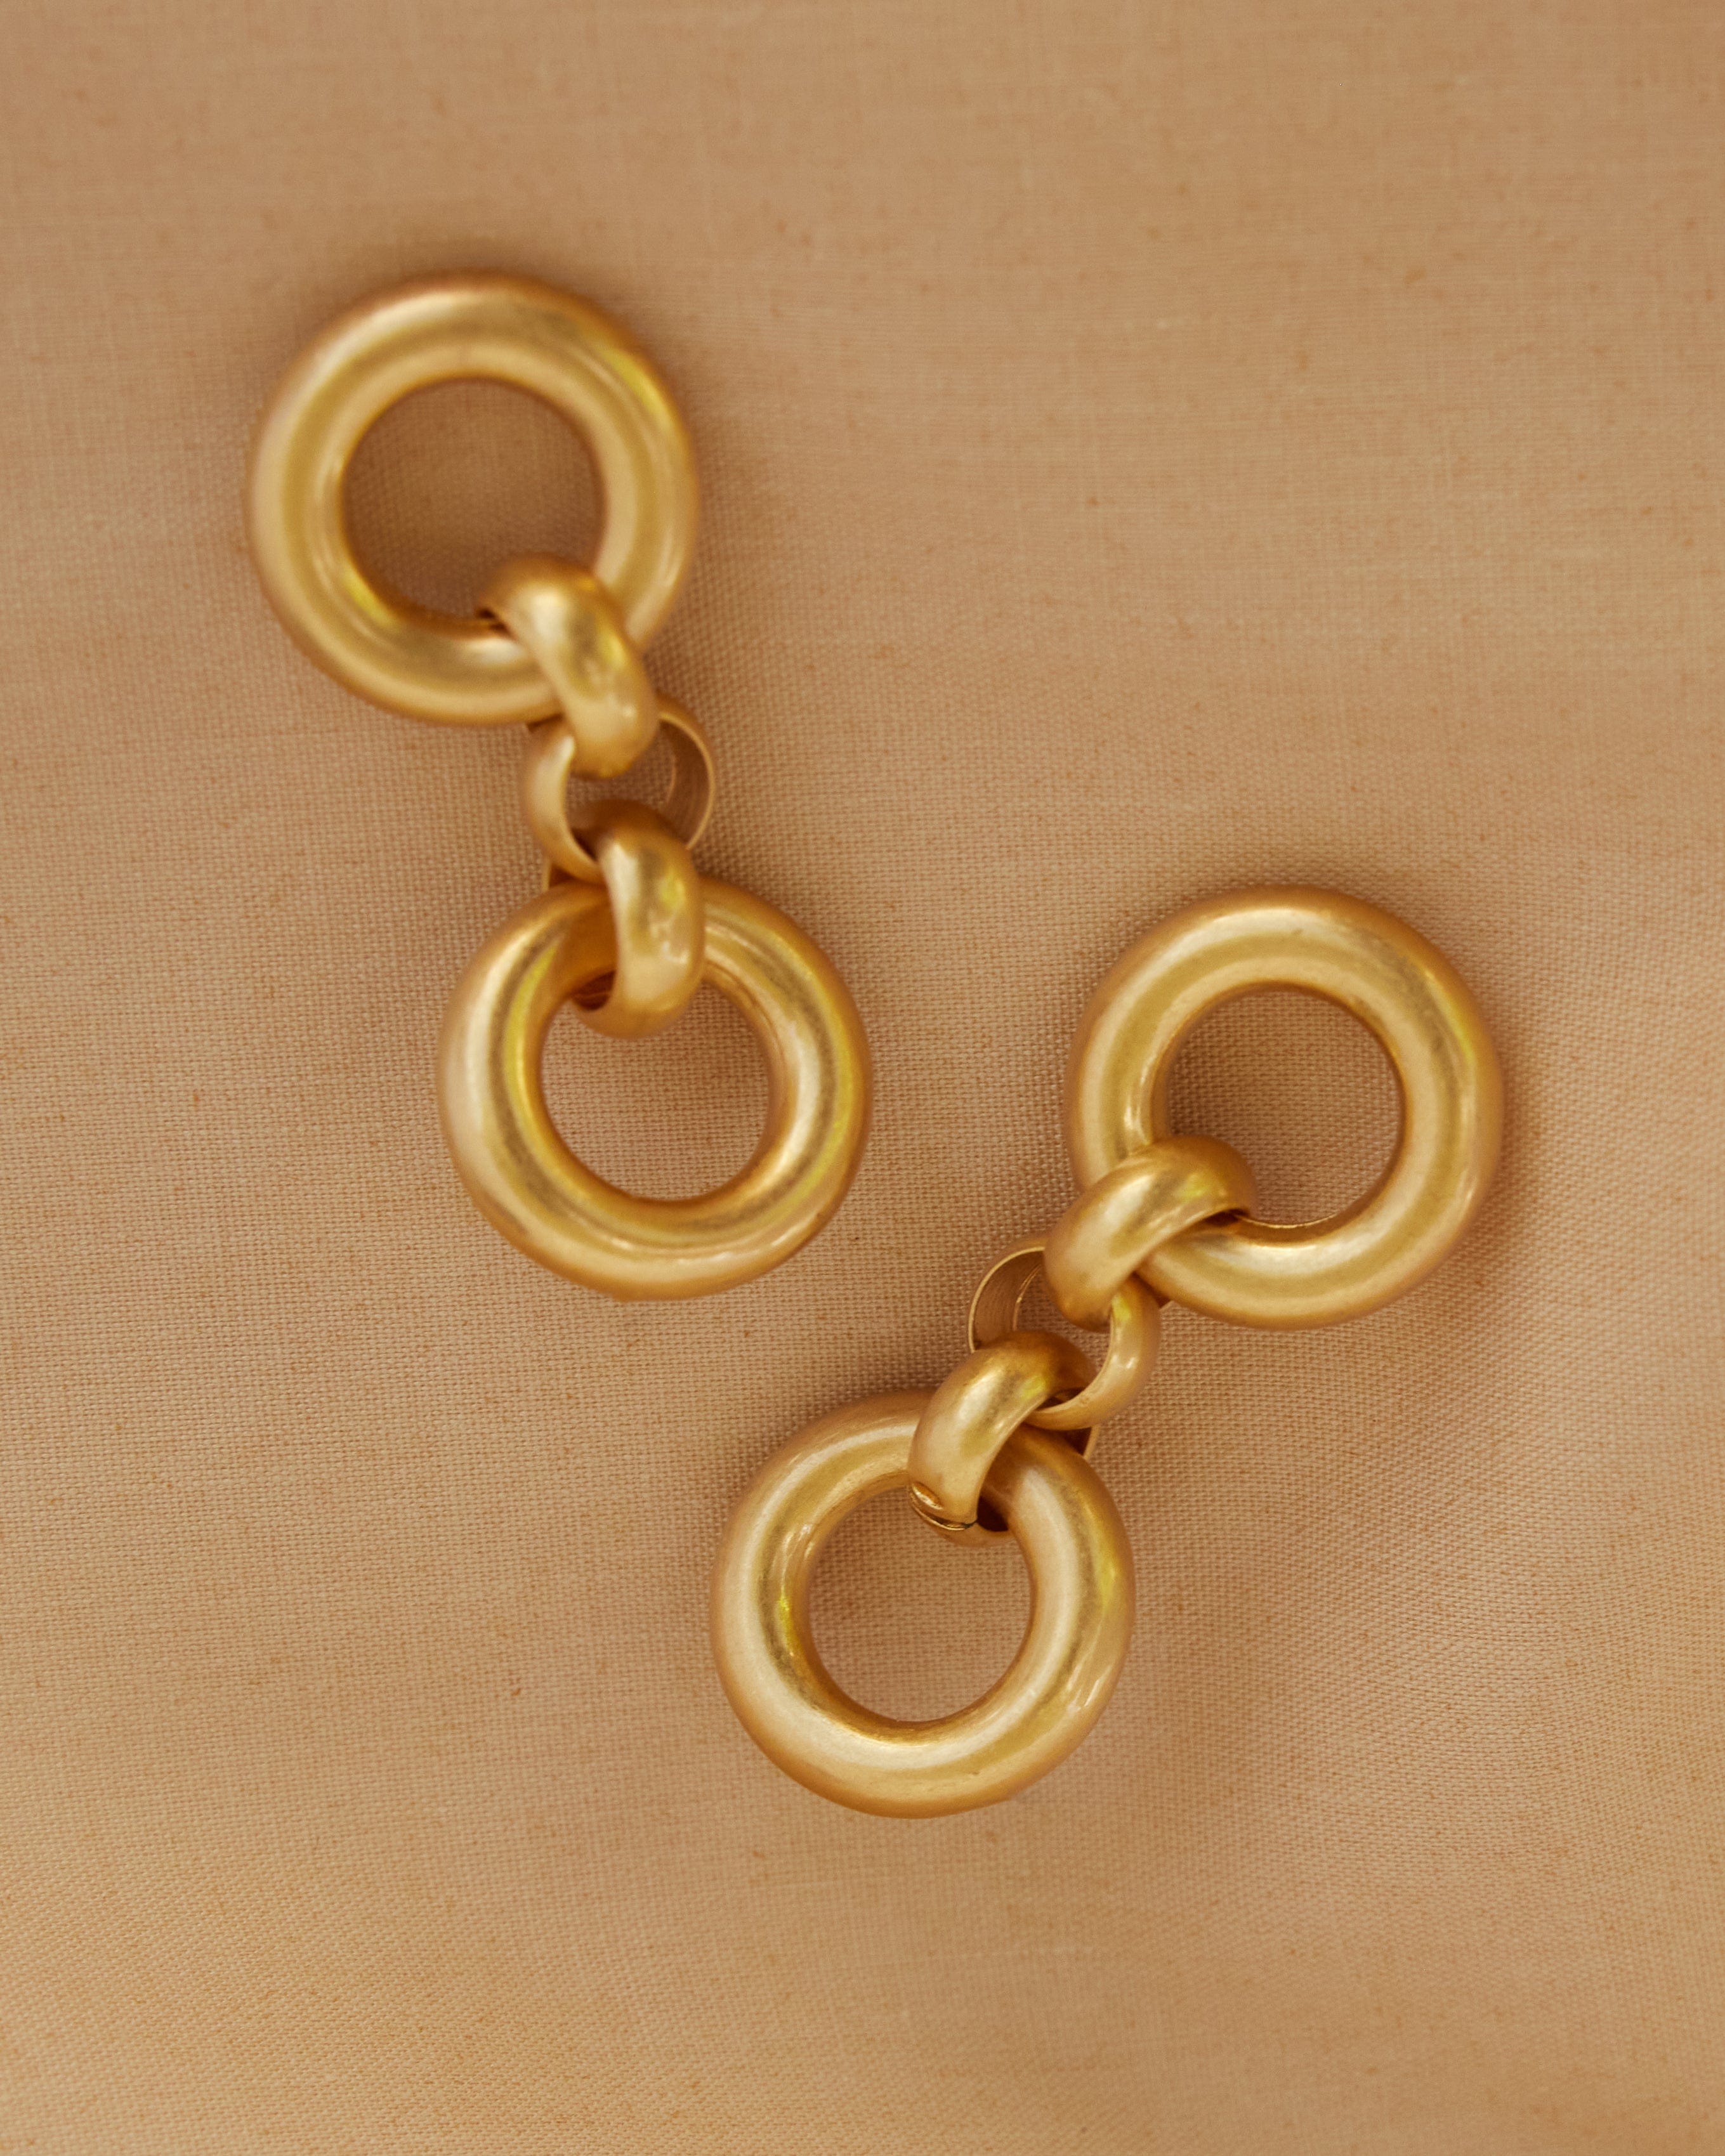 Gold ring earrings